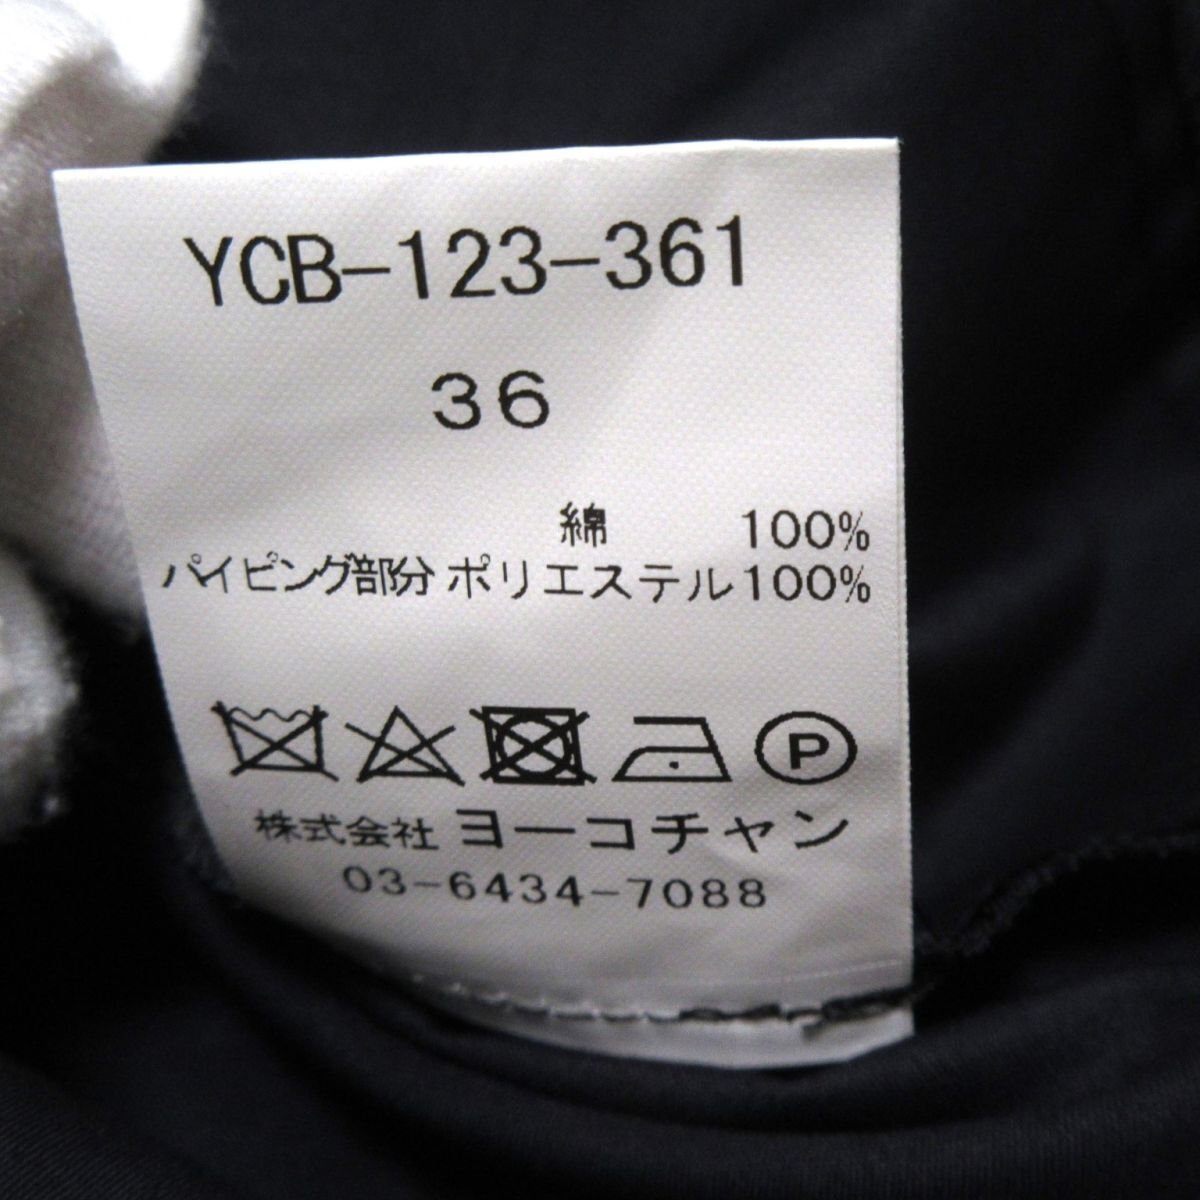  как новый 23SS YOKO CHAN Yohko коричневый n отметка цвет Hem gya The - блуза безрукавка YCB-123-361 36 темно-синий 